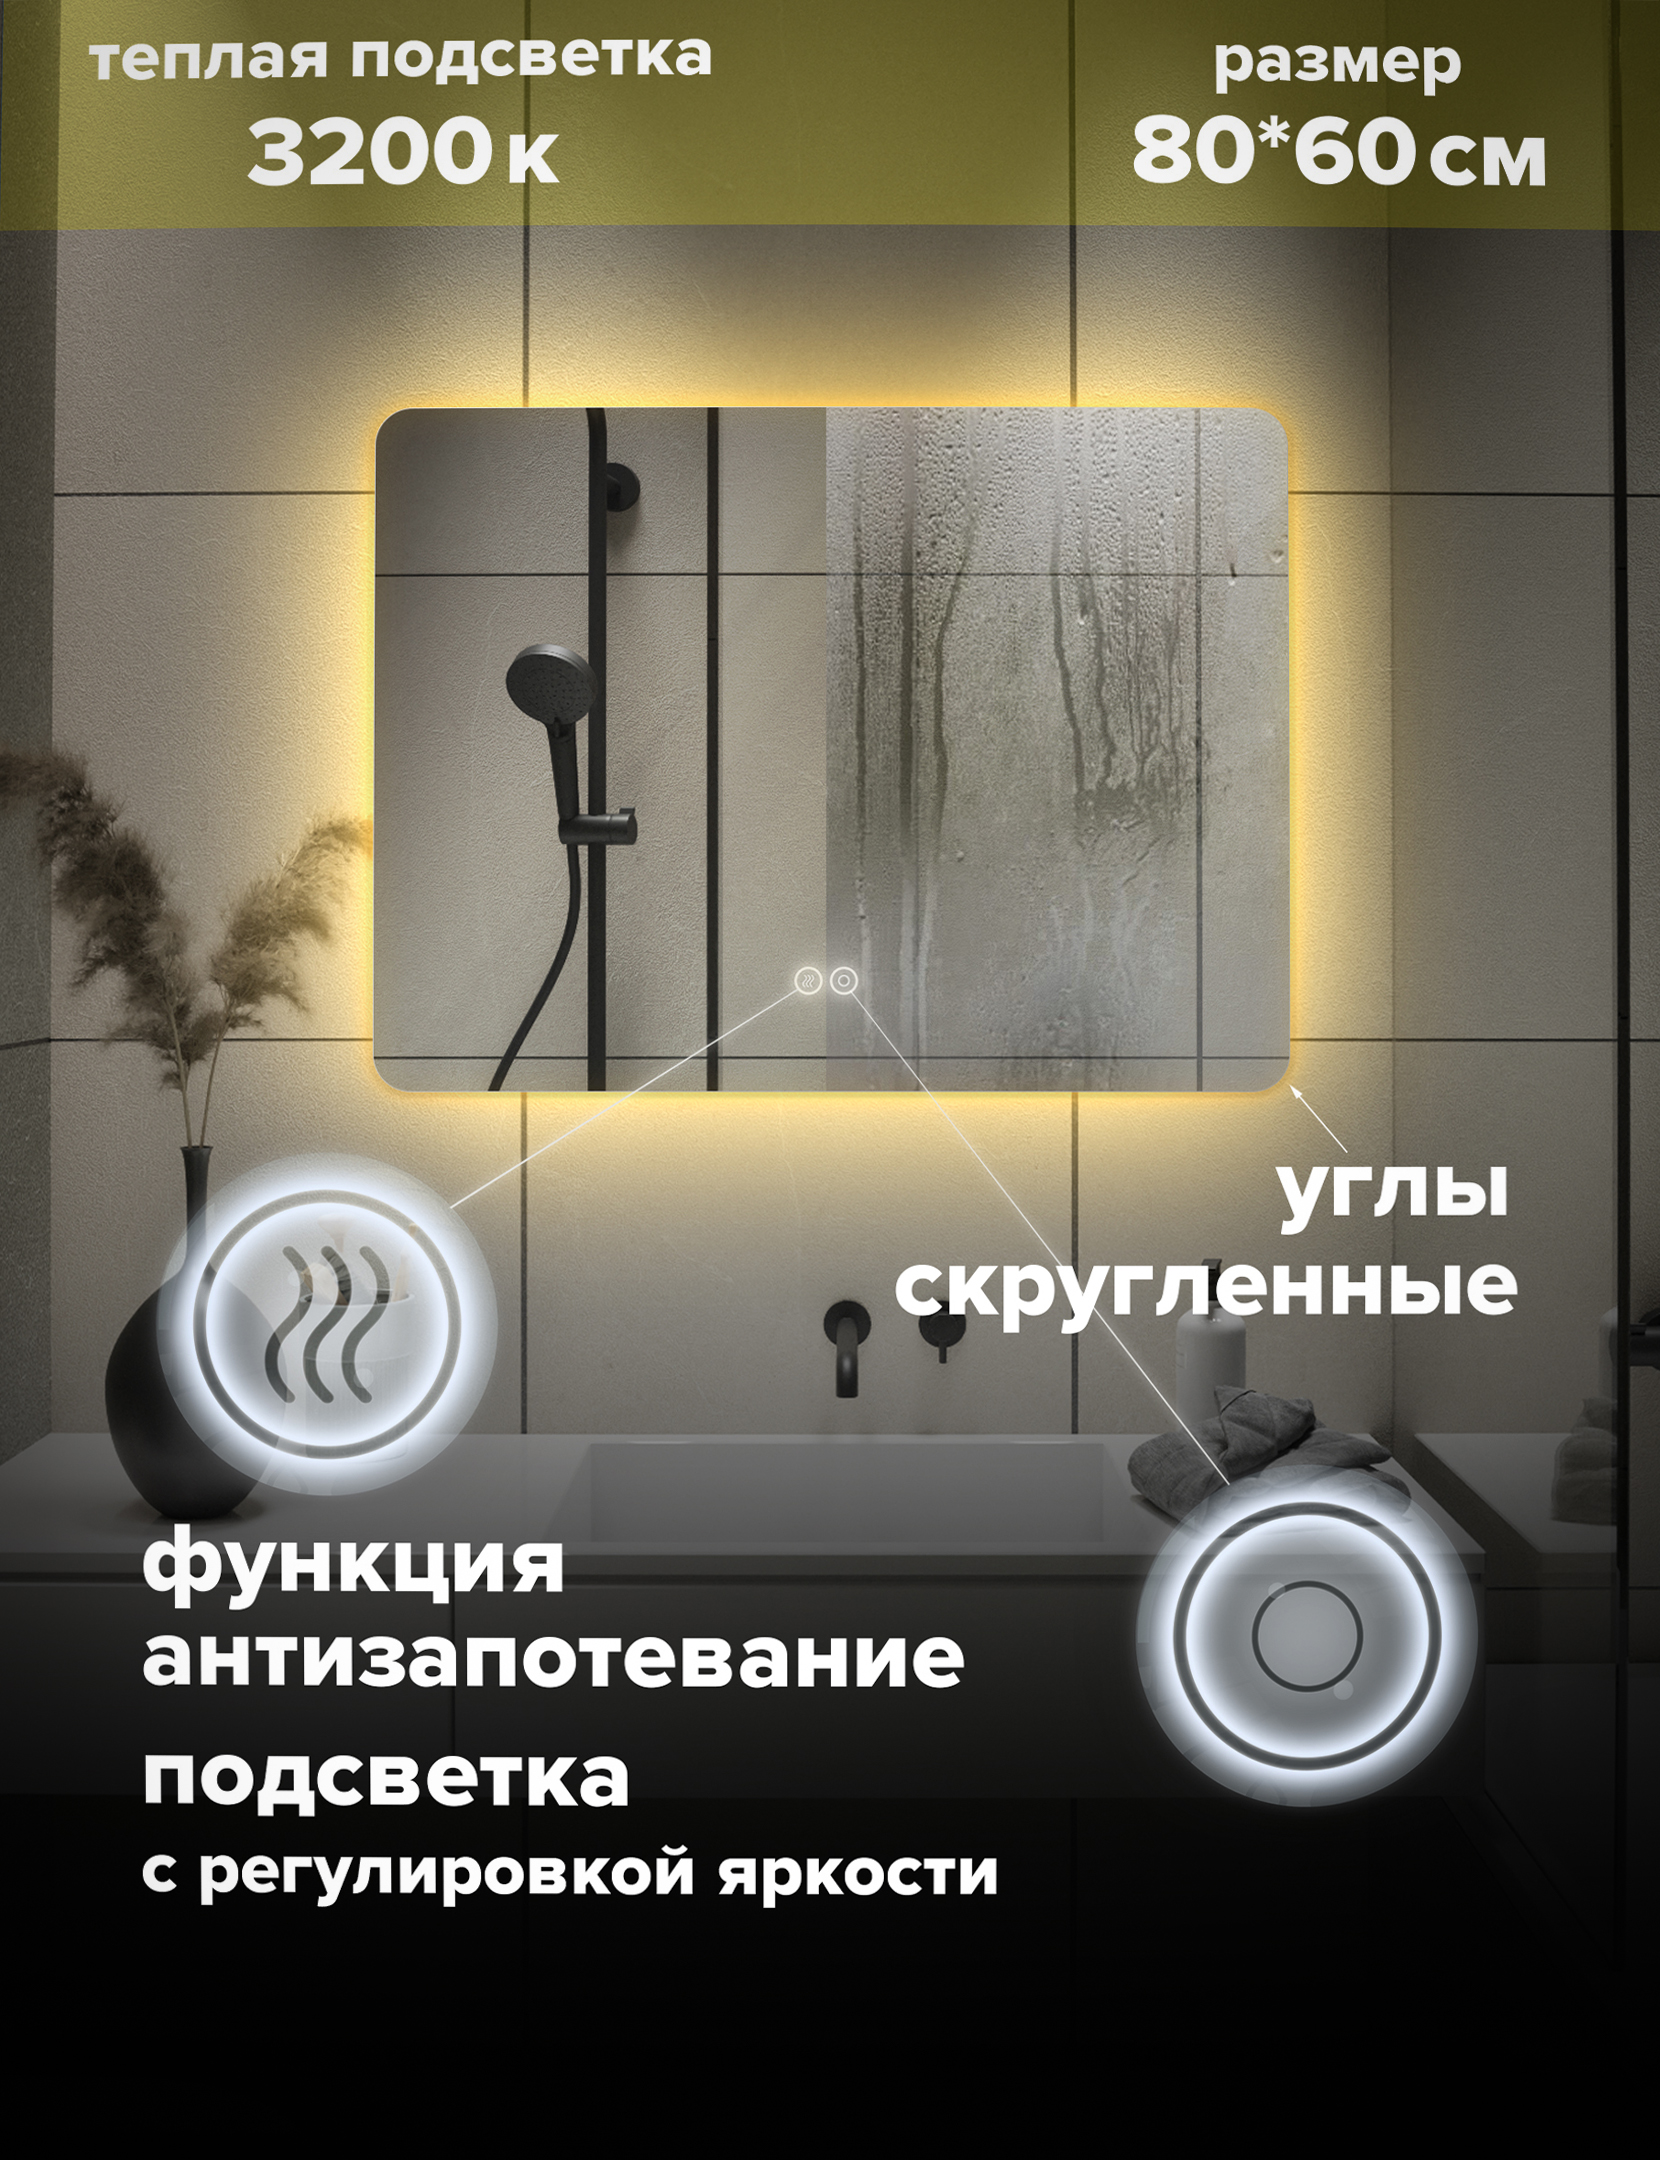 Зеркало для ванной Alfa Mirrors с теплой подсветкой 3200К прямоугольное 80*60 см, MOl-86At